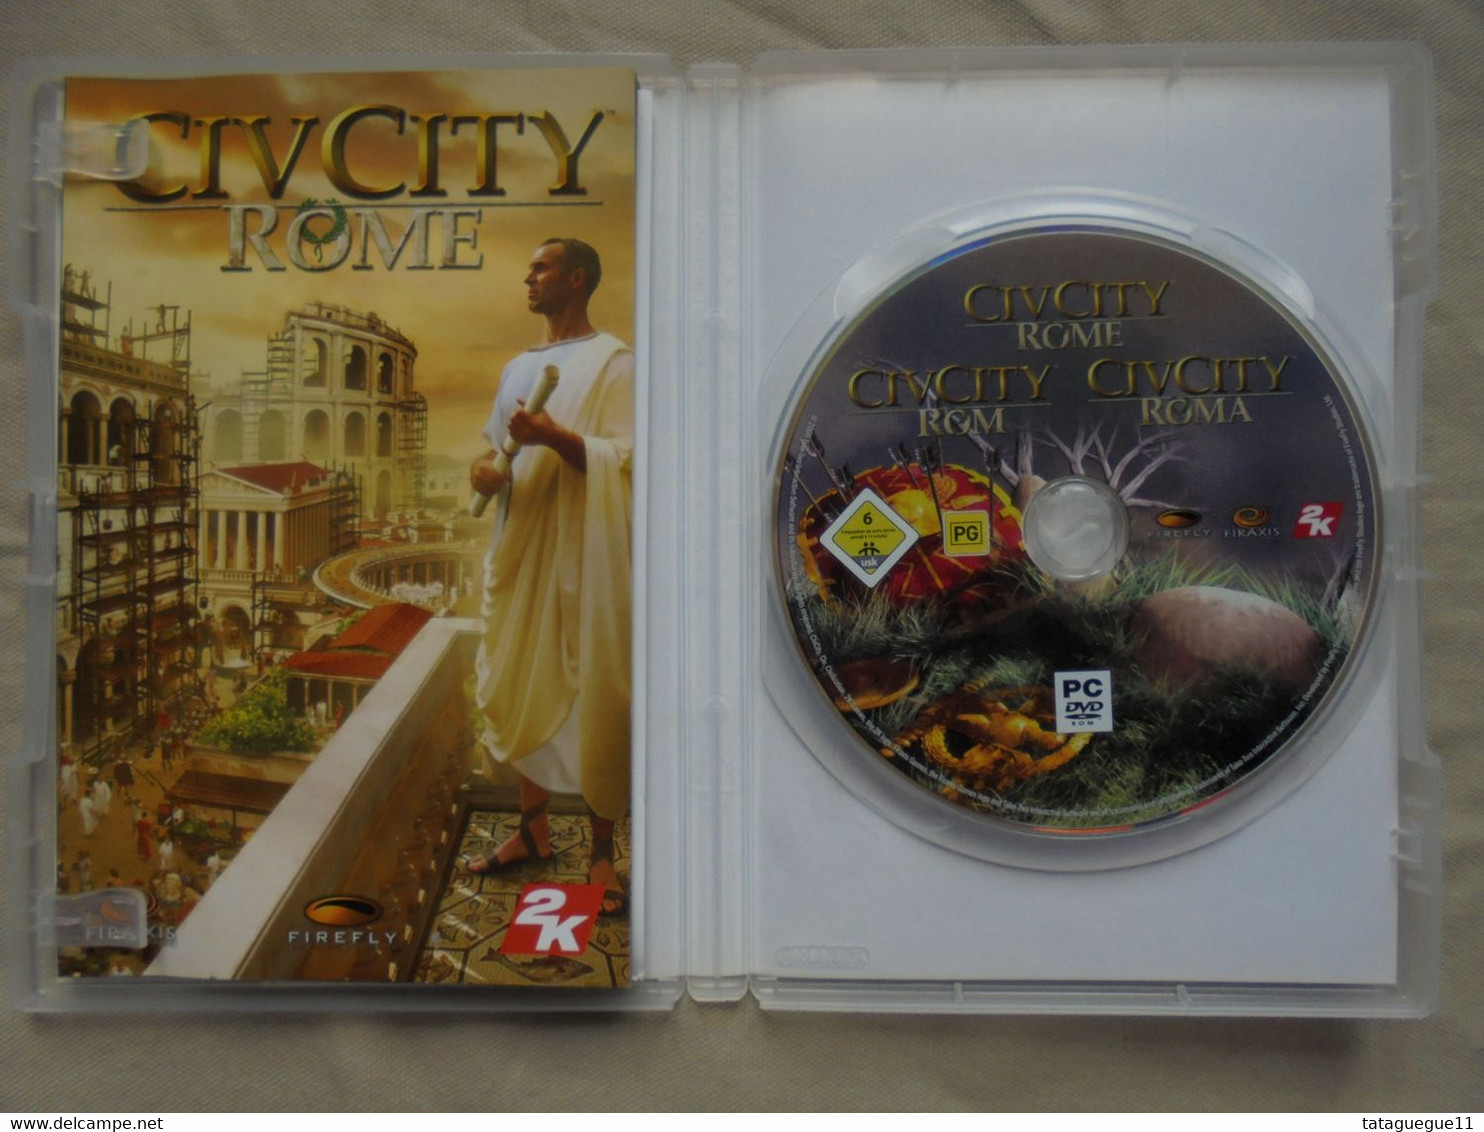 Vintage - Jeu PC DVD Rom - CivCity Rome - 2006 - PC-Games